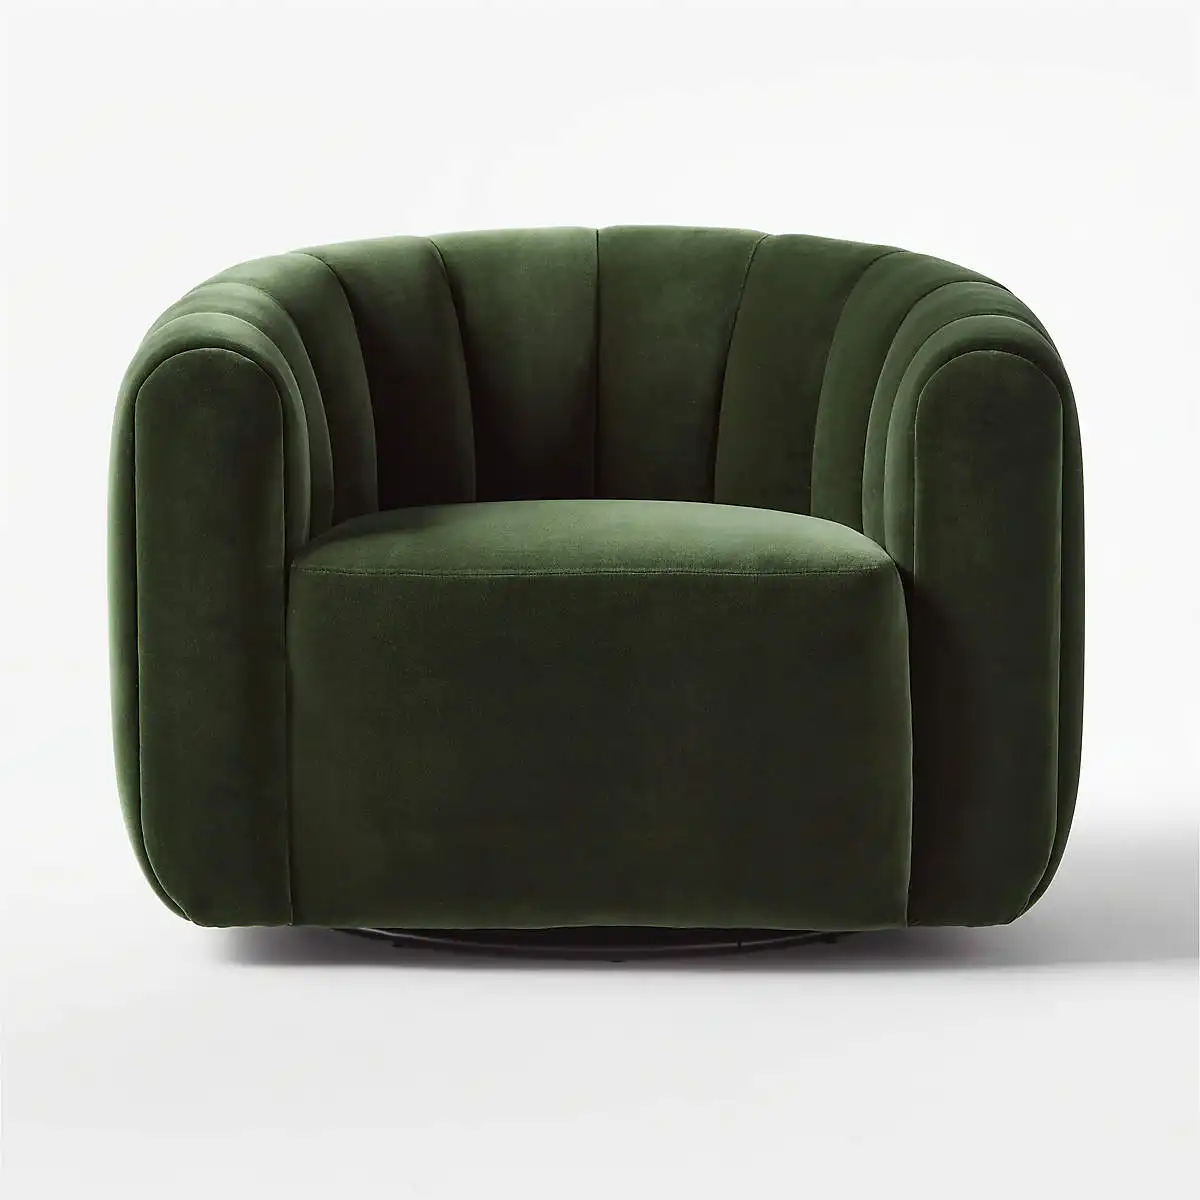 Veludo verde cadeira de acessório giratório, canalizado único sofá ocasional de luxo cadeiras para sala de estar uso